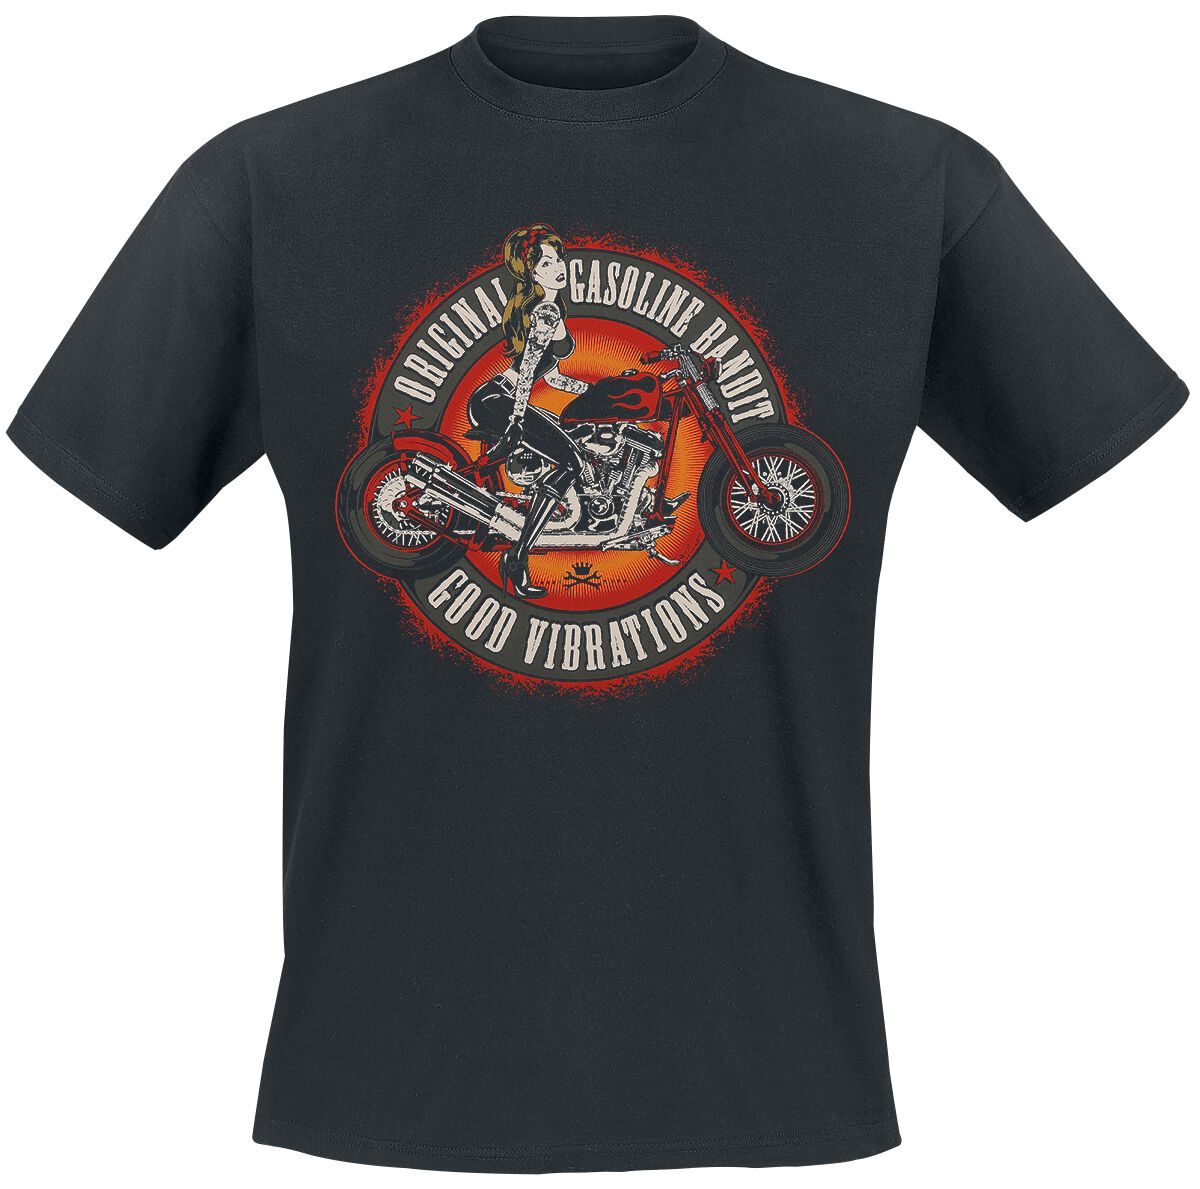 Gasoline Bandit - Rockabilly T-Shirt - Good Vibrations - S bis 3XL - für Männer - Größe 3XL - schwarz